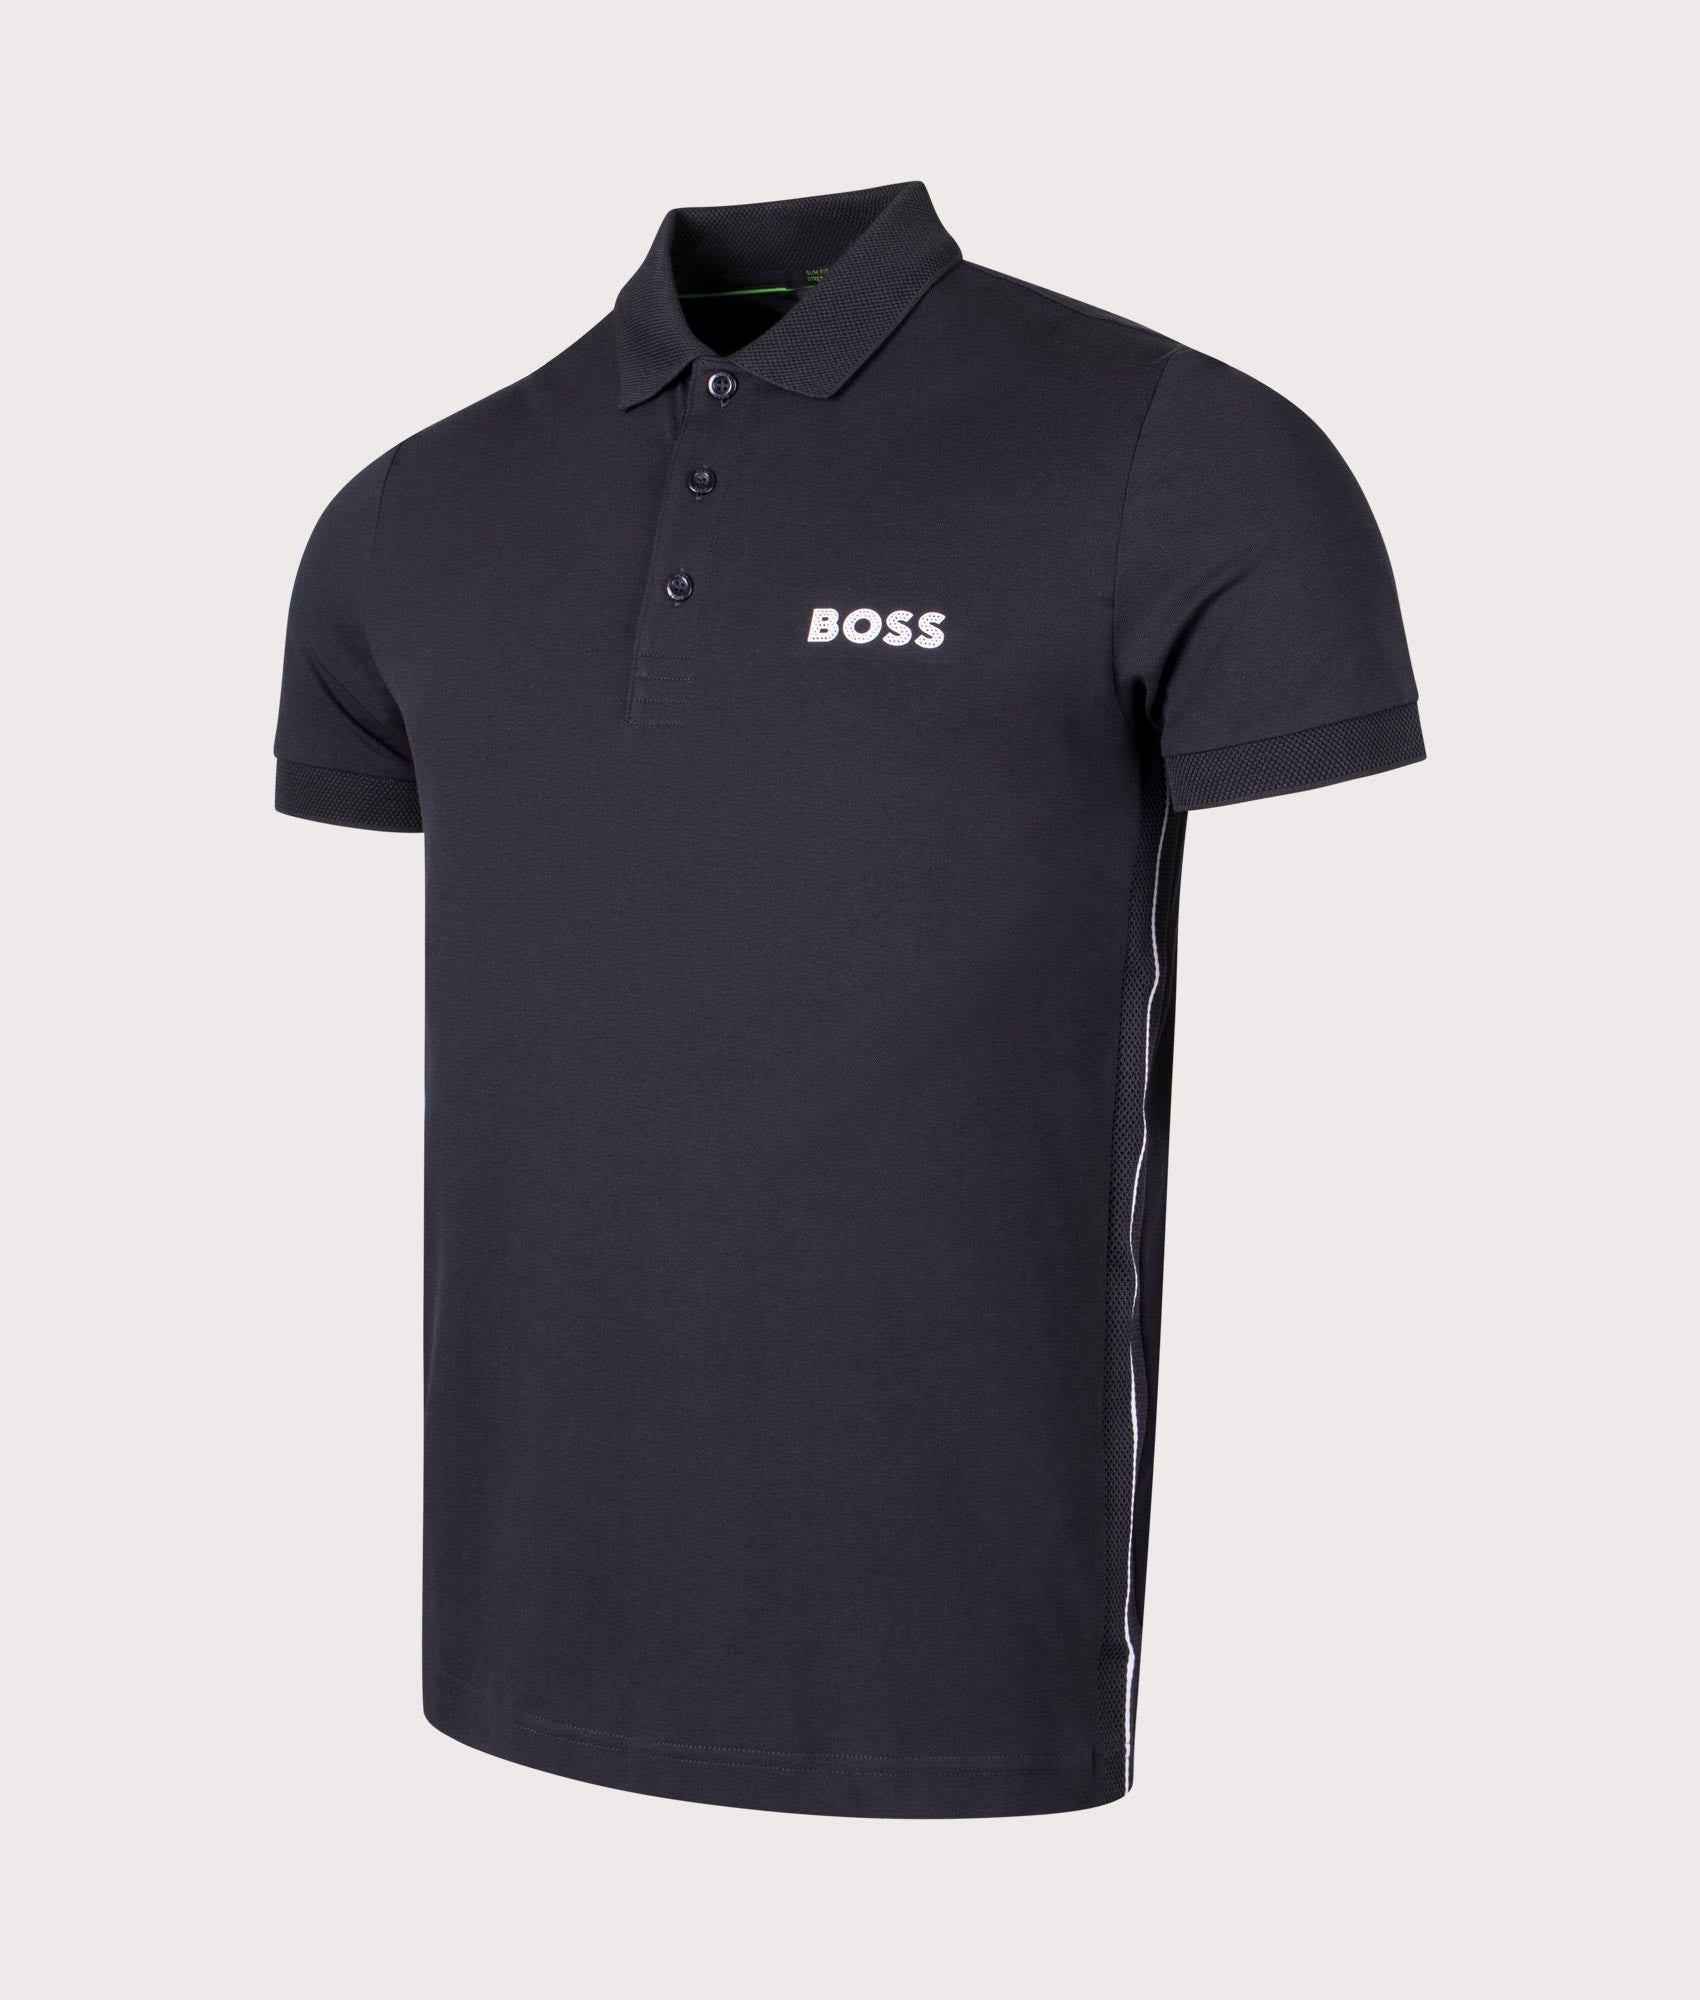 BOSS Mens Slim Fit Paule Polo Shirt - Colour: 402 Dark Blue - Size: Large